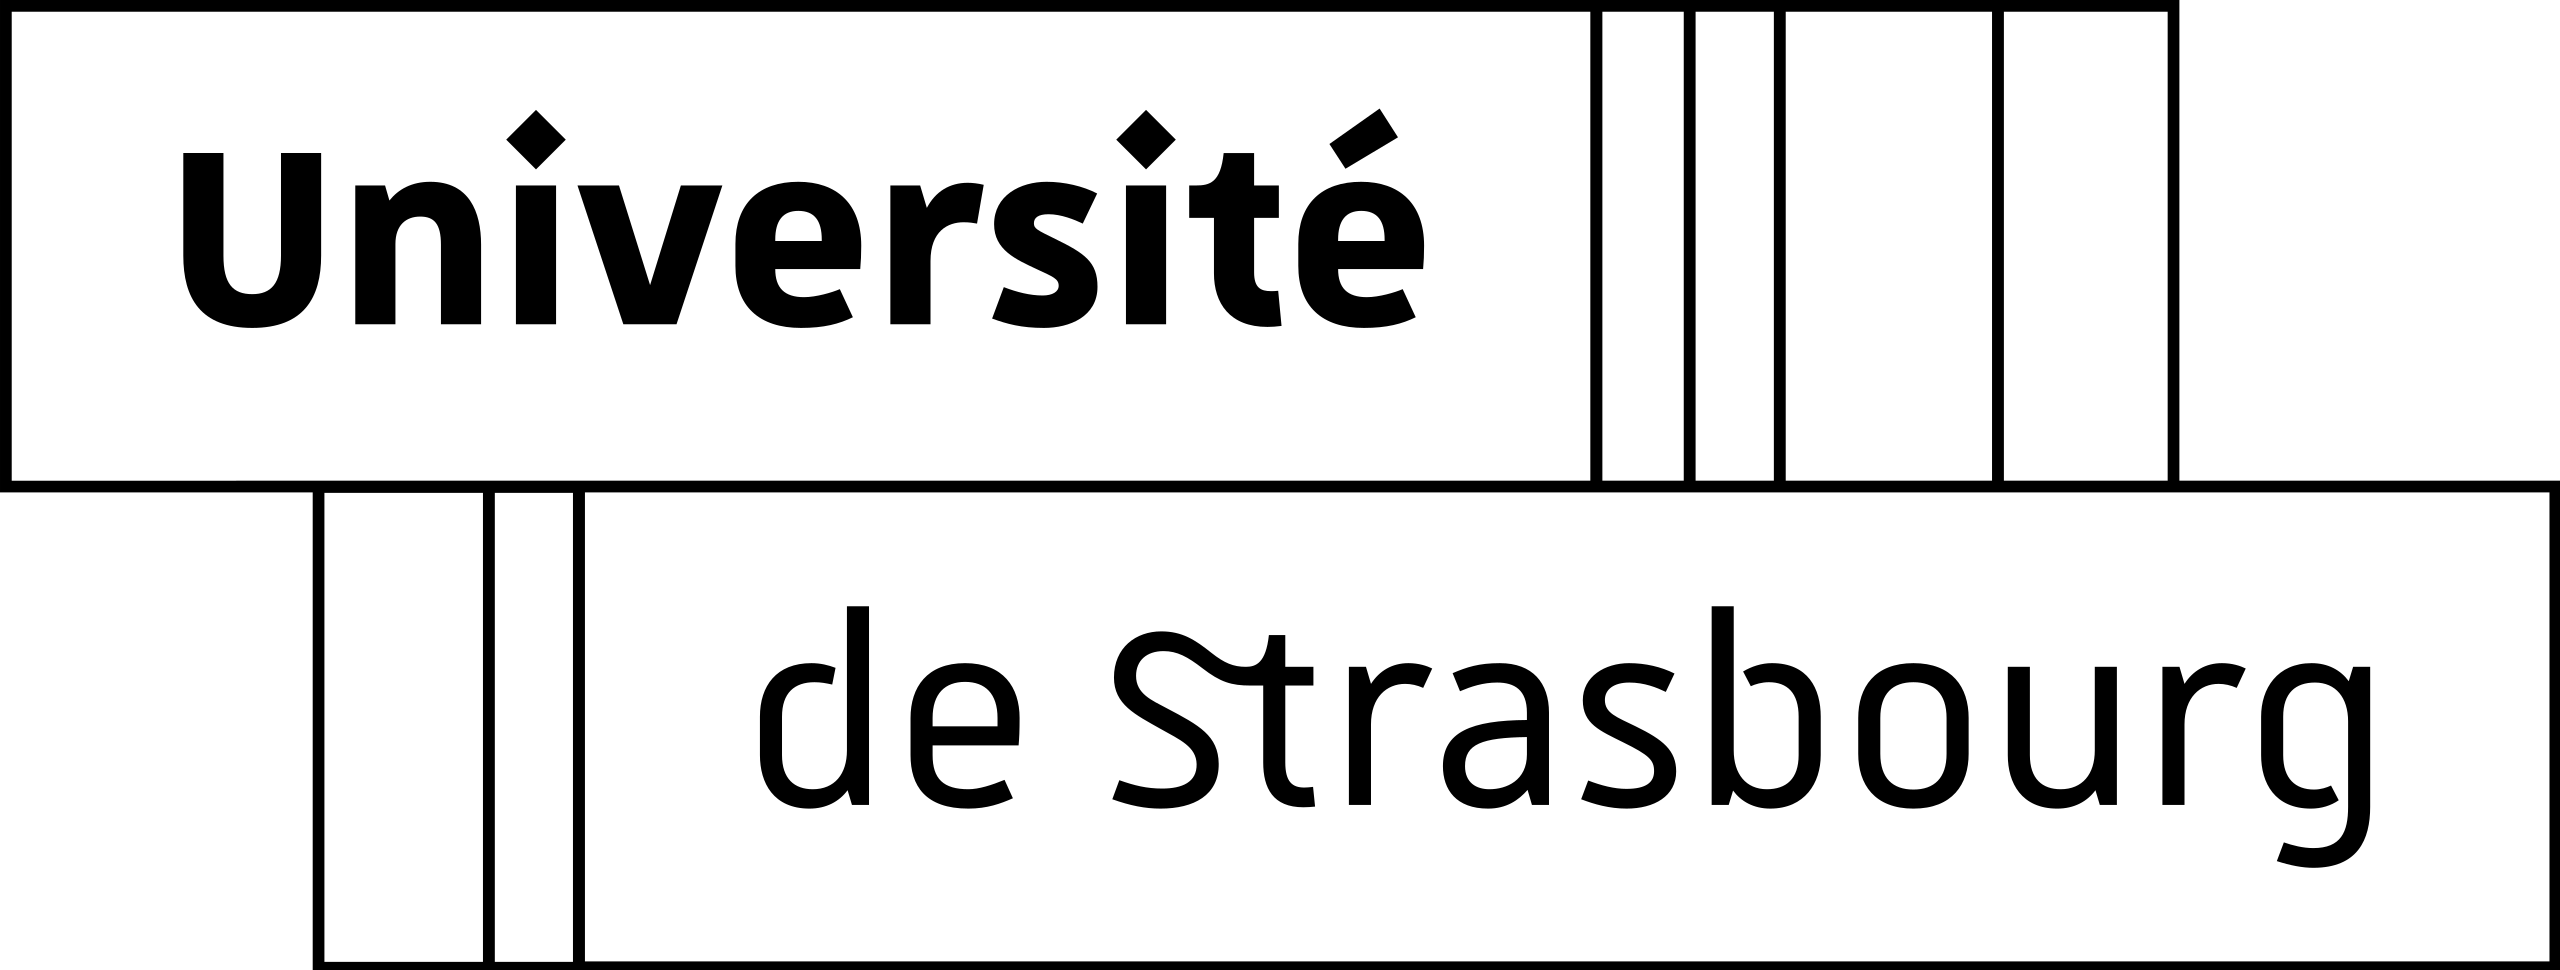 University of Strassbourg